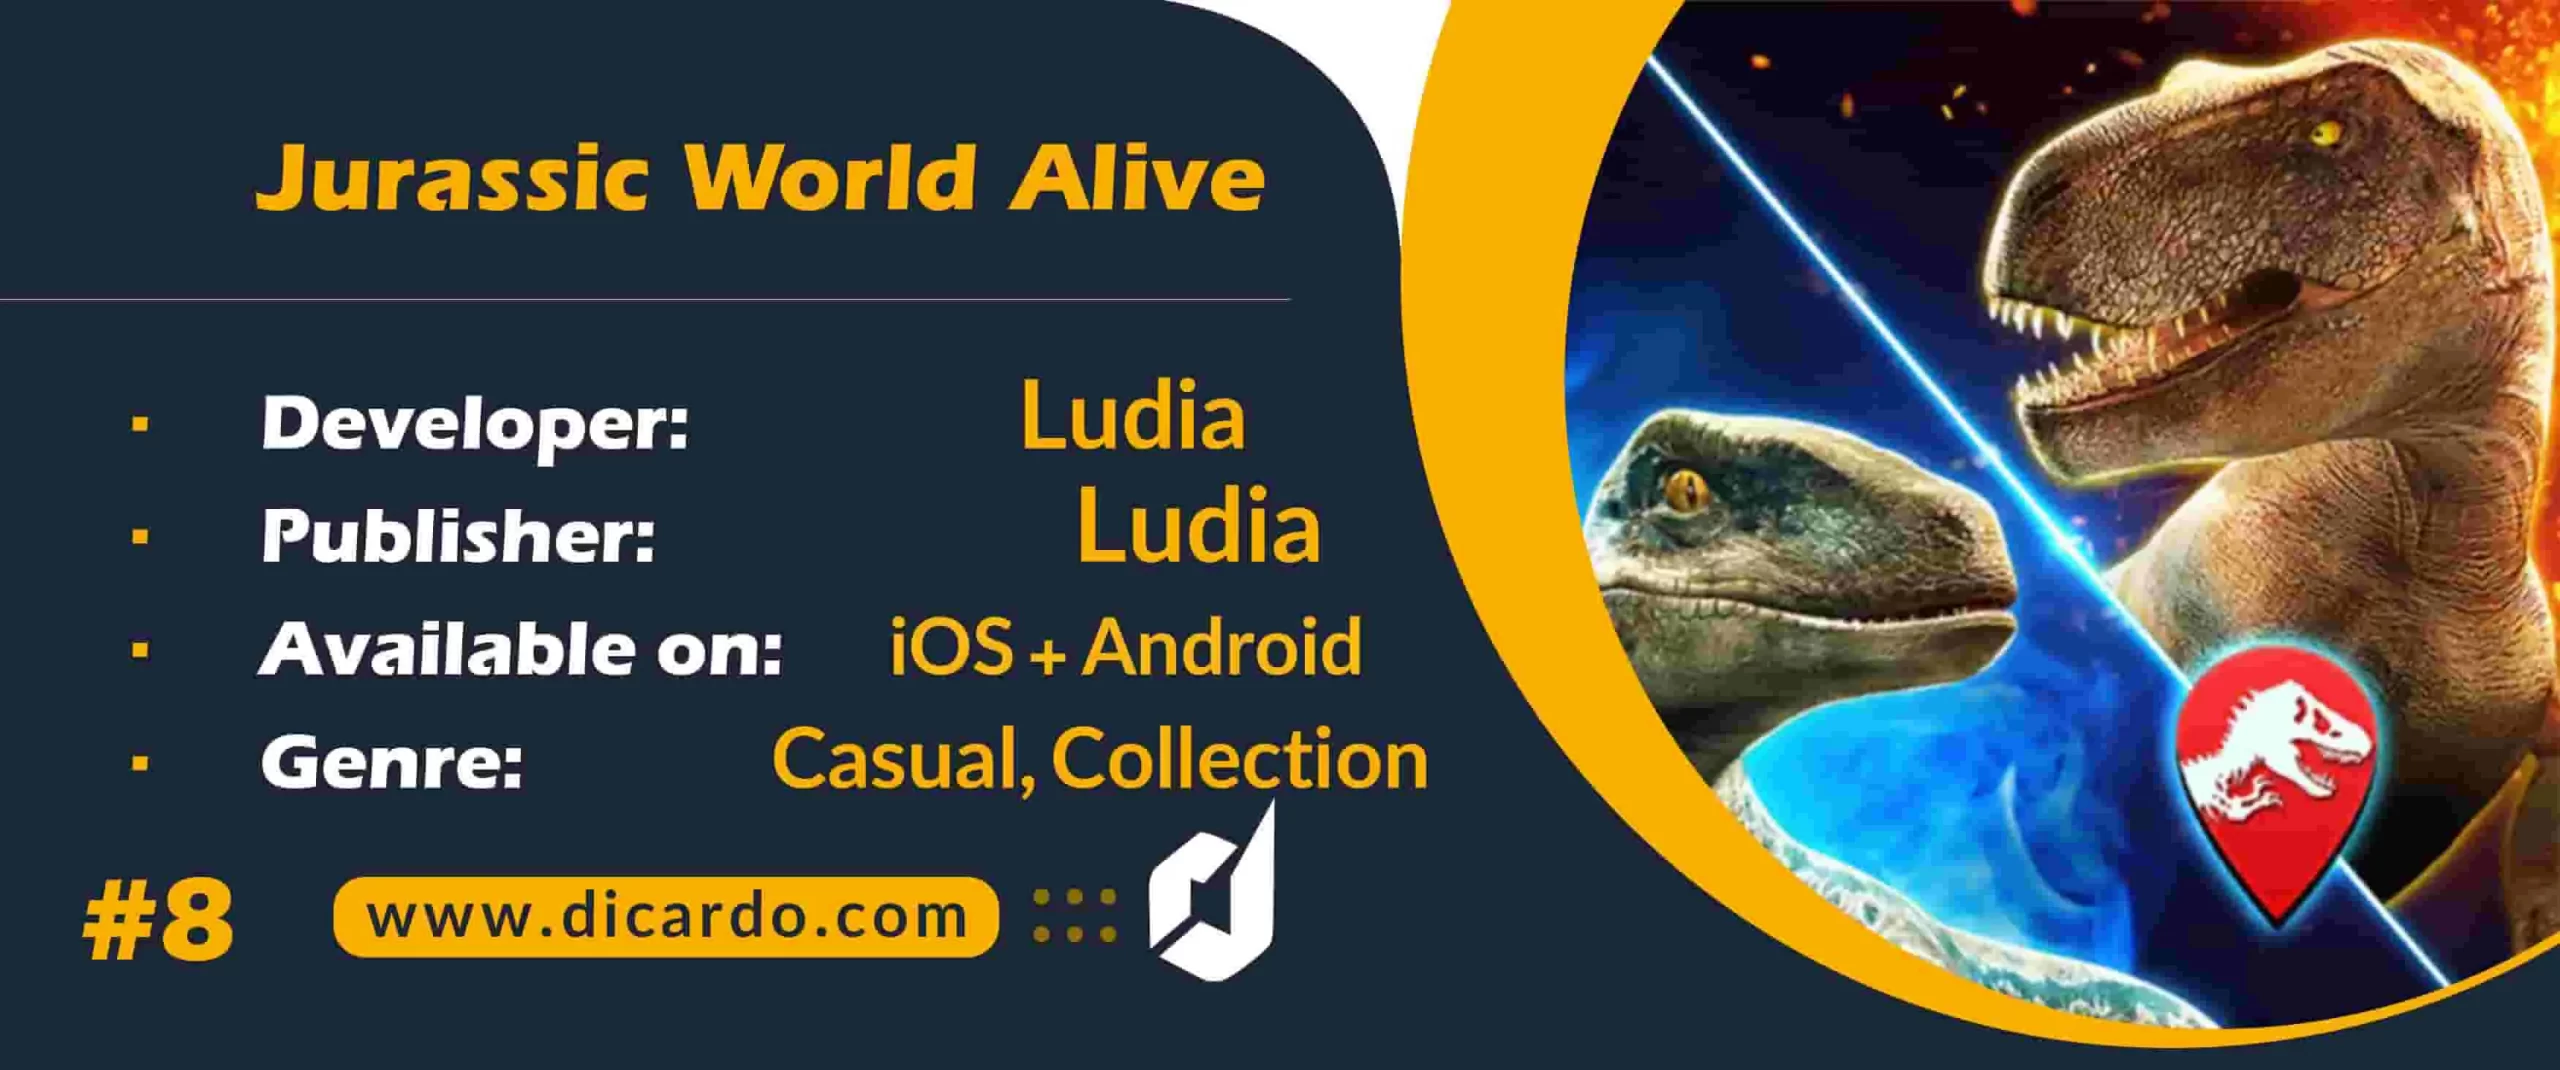 #8 ژوراسیک وورلد الایو Jurassic World Alive آخرین مورد از بهترین بازیهای واقعیت افزوده برای iOS